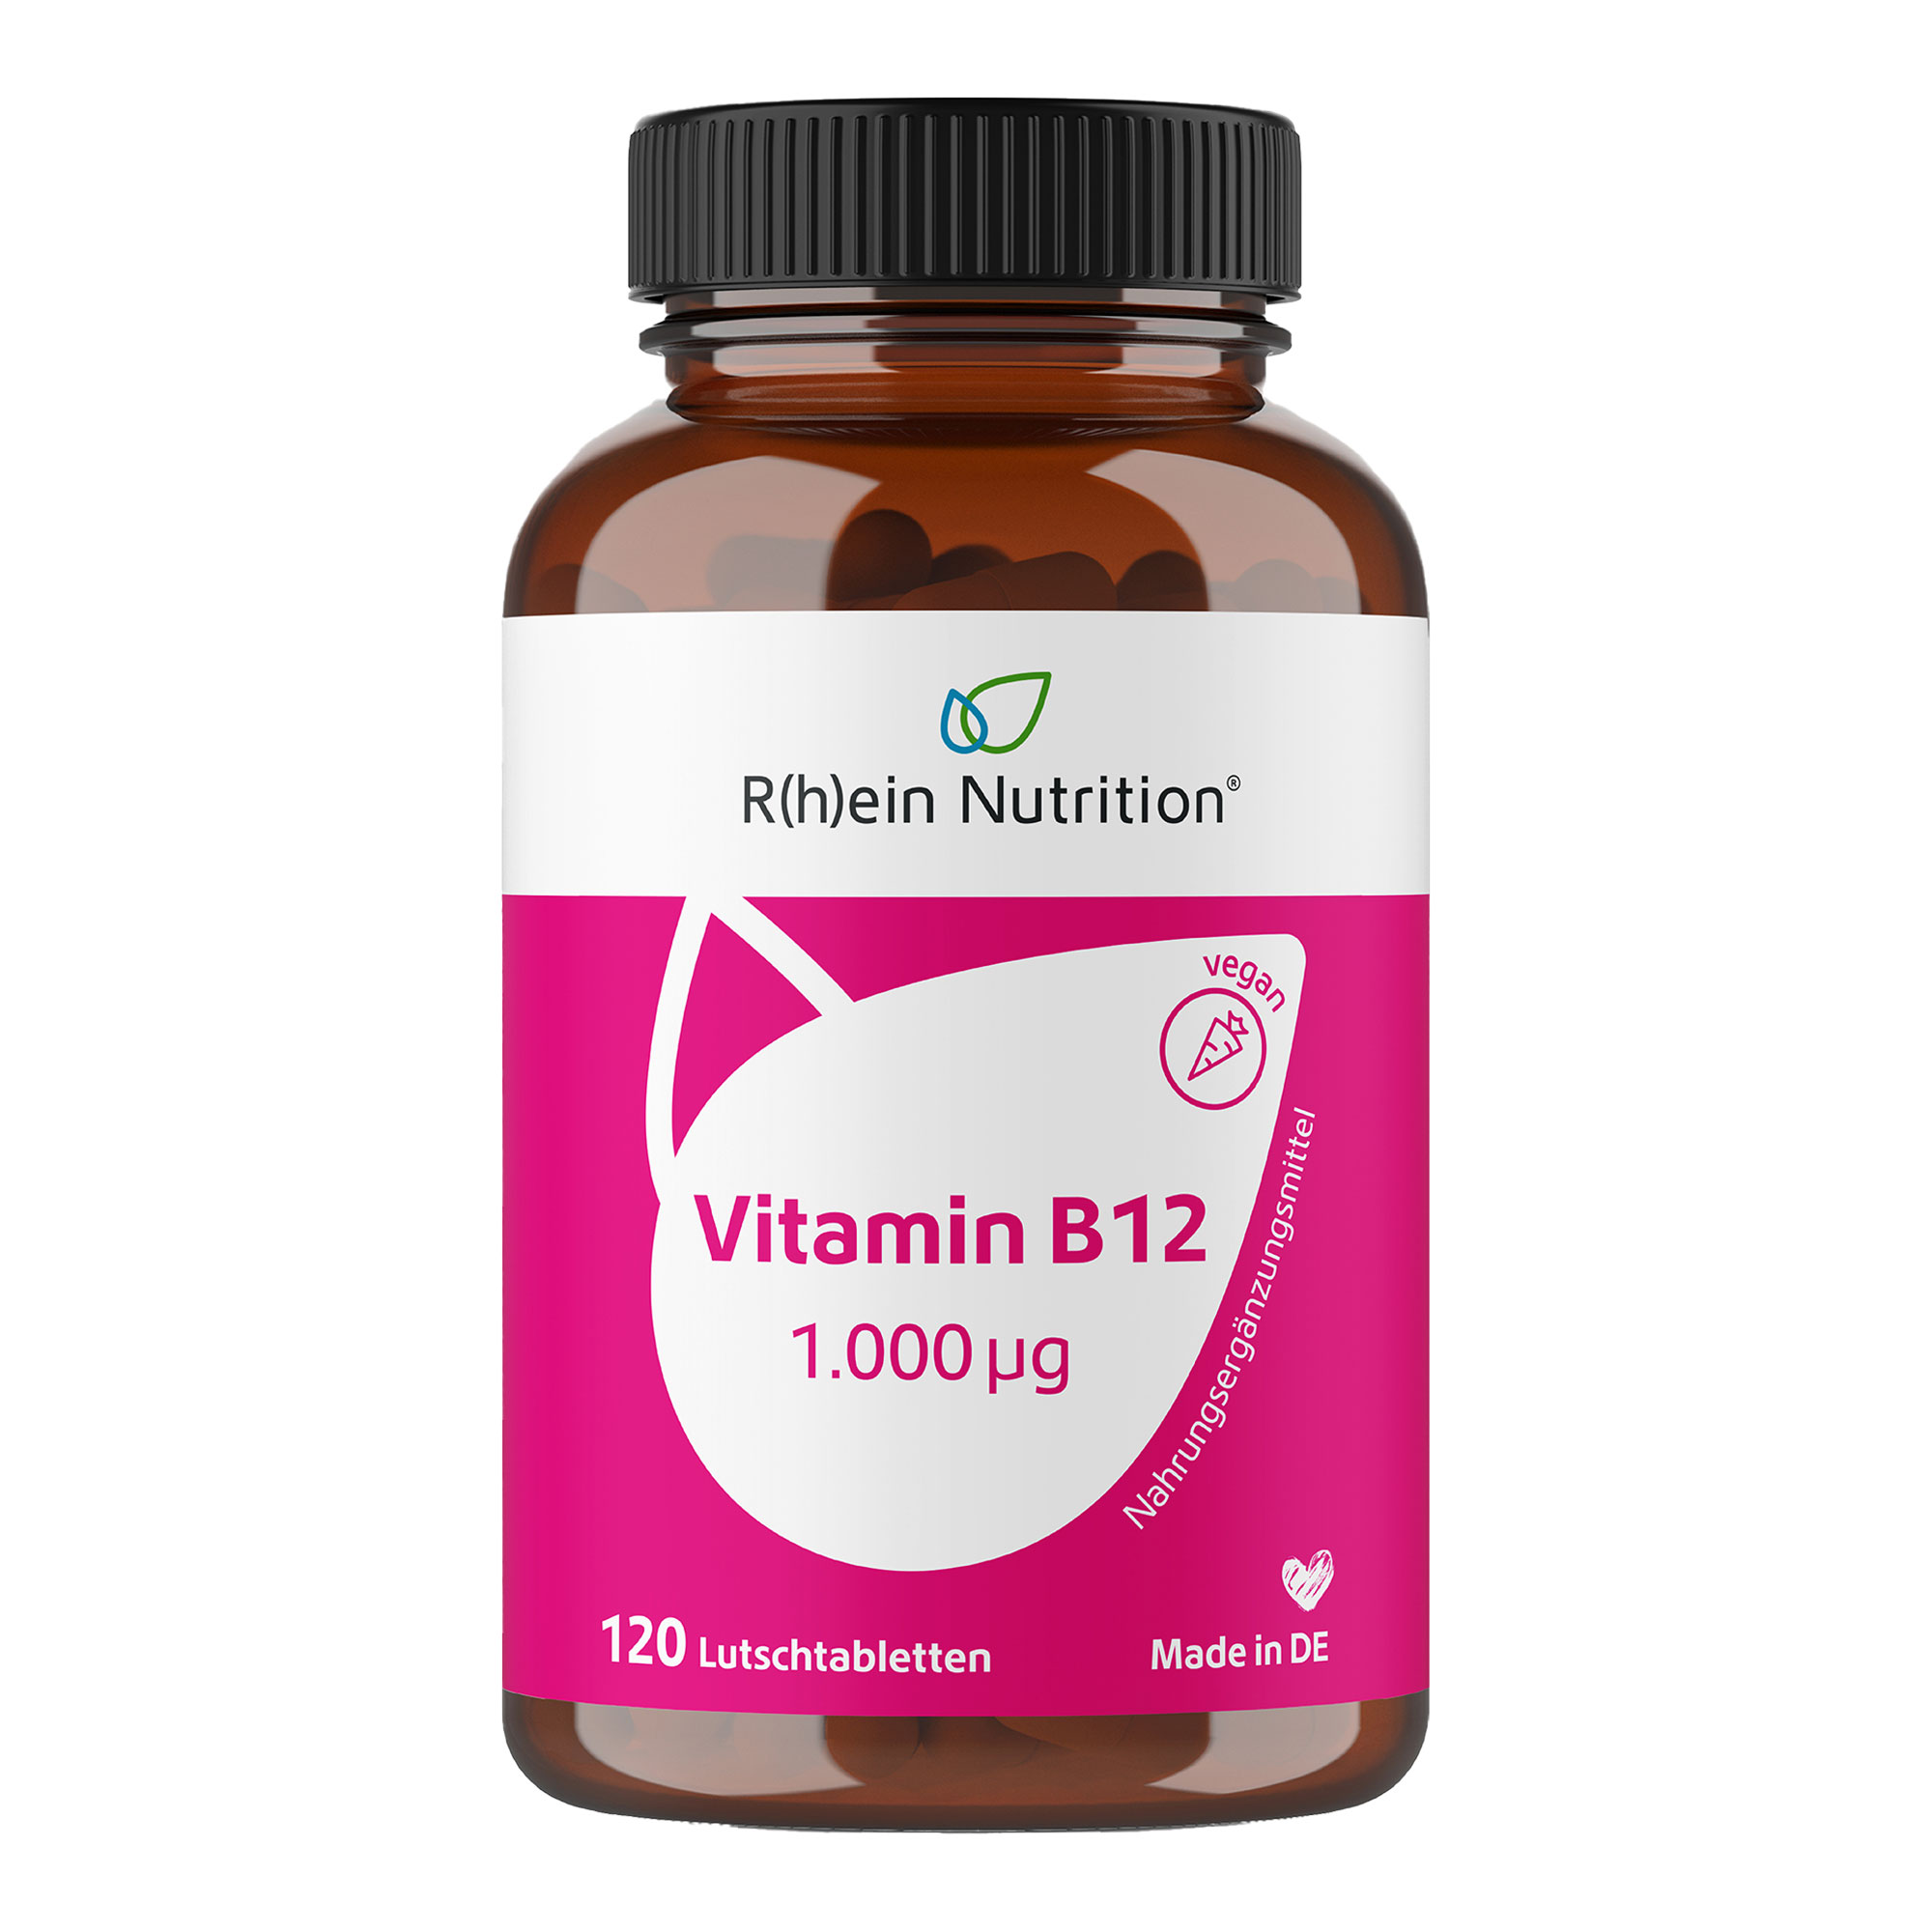 Nahrungsergänzungsmittel mit hochdosiertem Vitamin B12. Mit Wildkirschgeschmack.